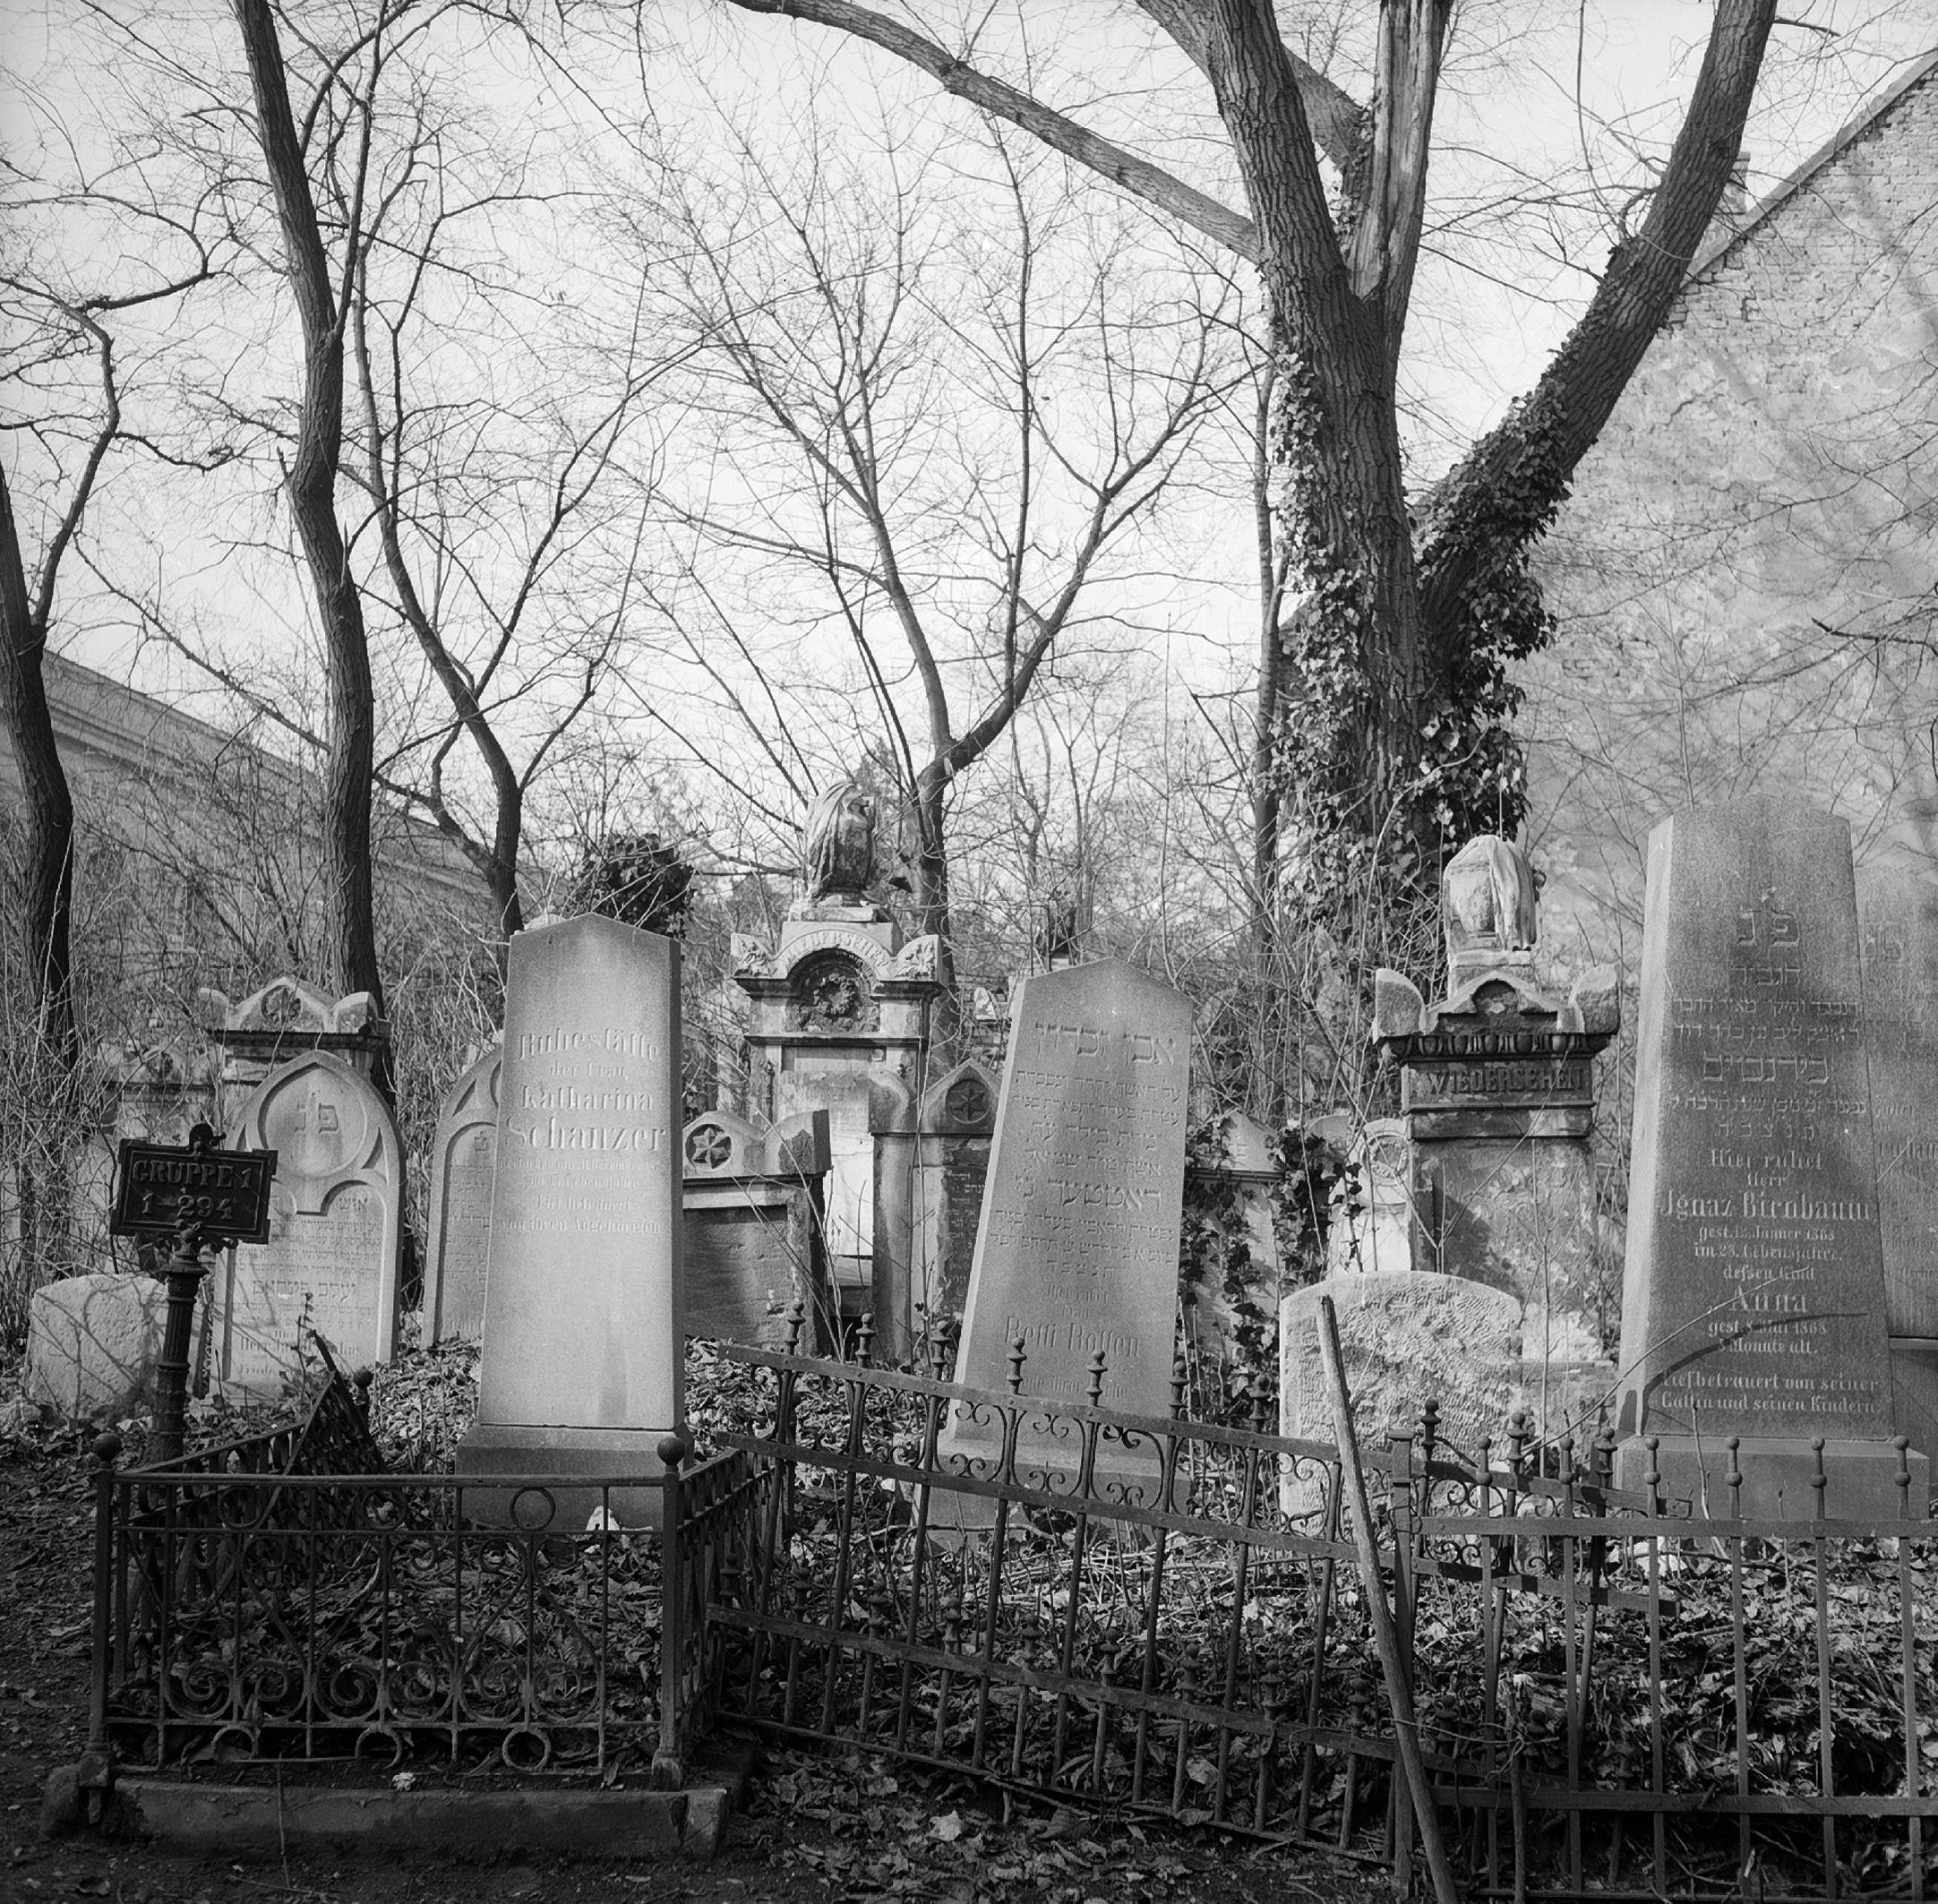 schwarz-weiß Aufnahme von Grabsteinen aus dem Jahr 1960